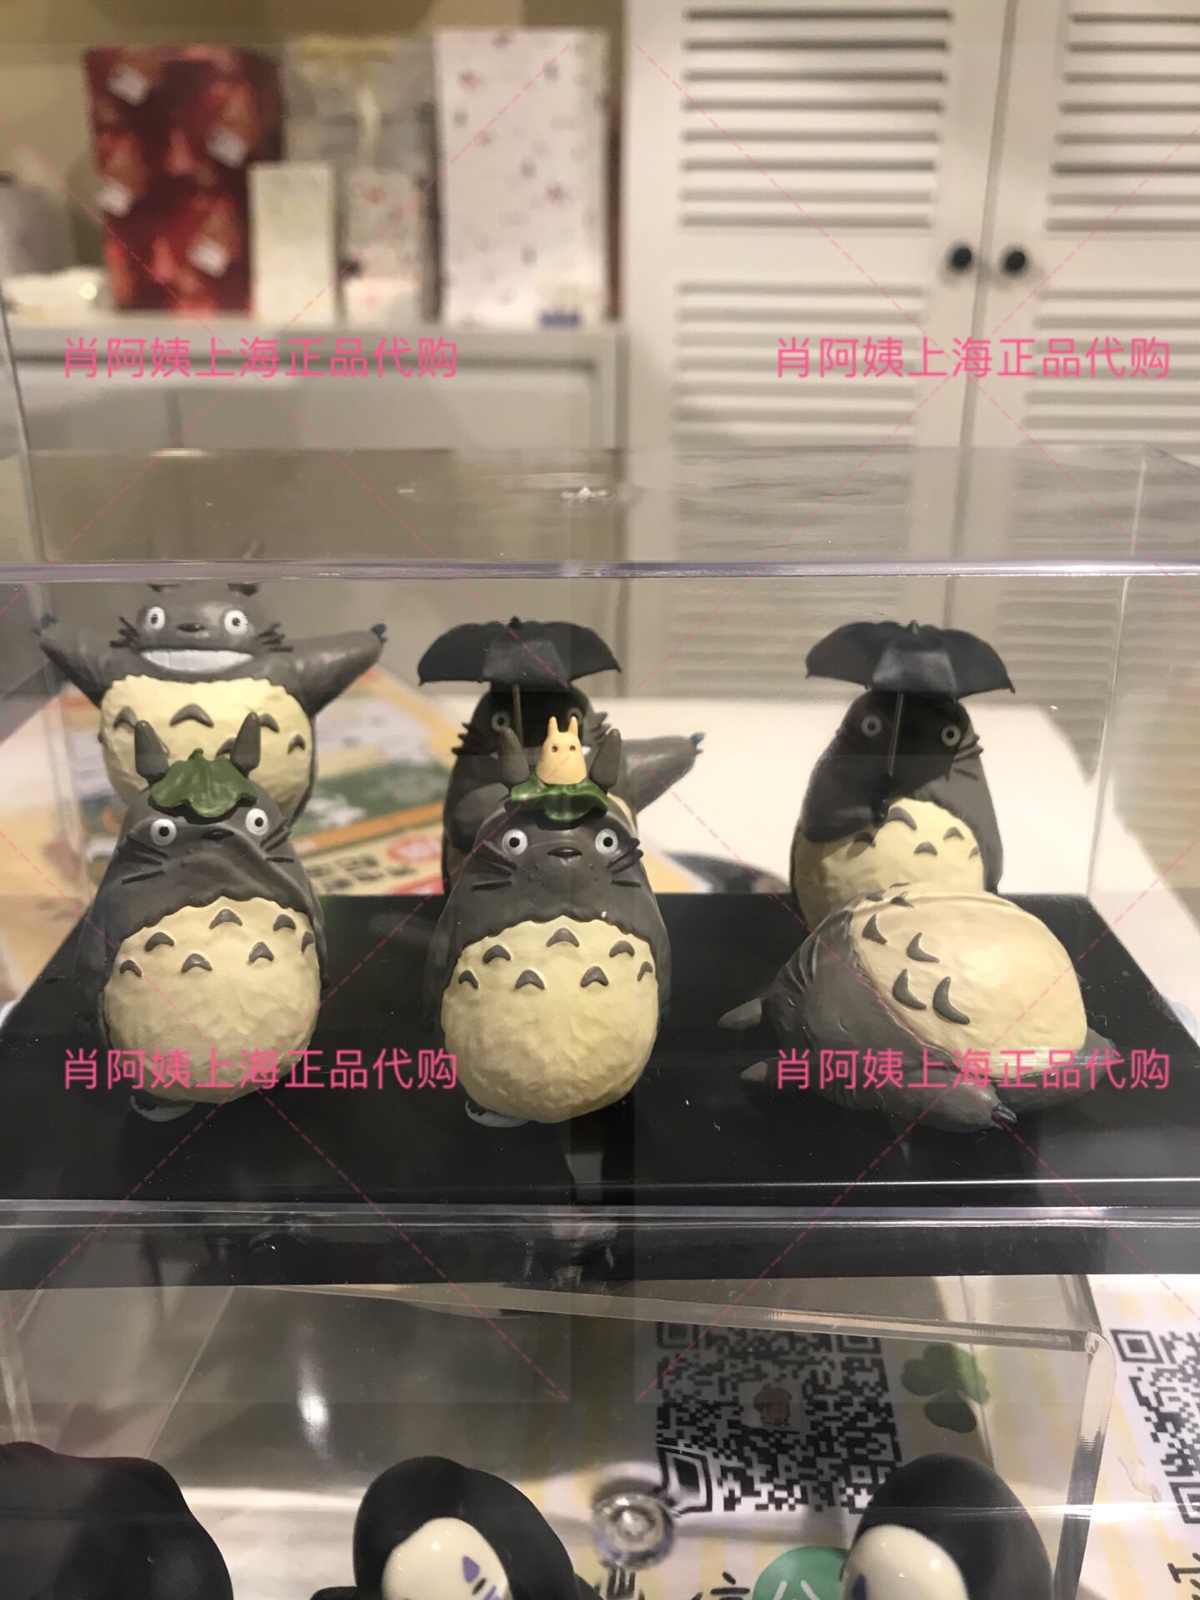 上海宫崎骏正版周边商店橡子共和国国内代购龙猫盲盒小摆件共6款